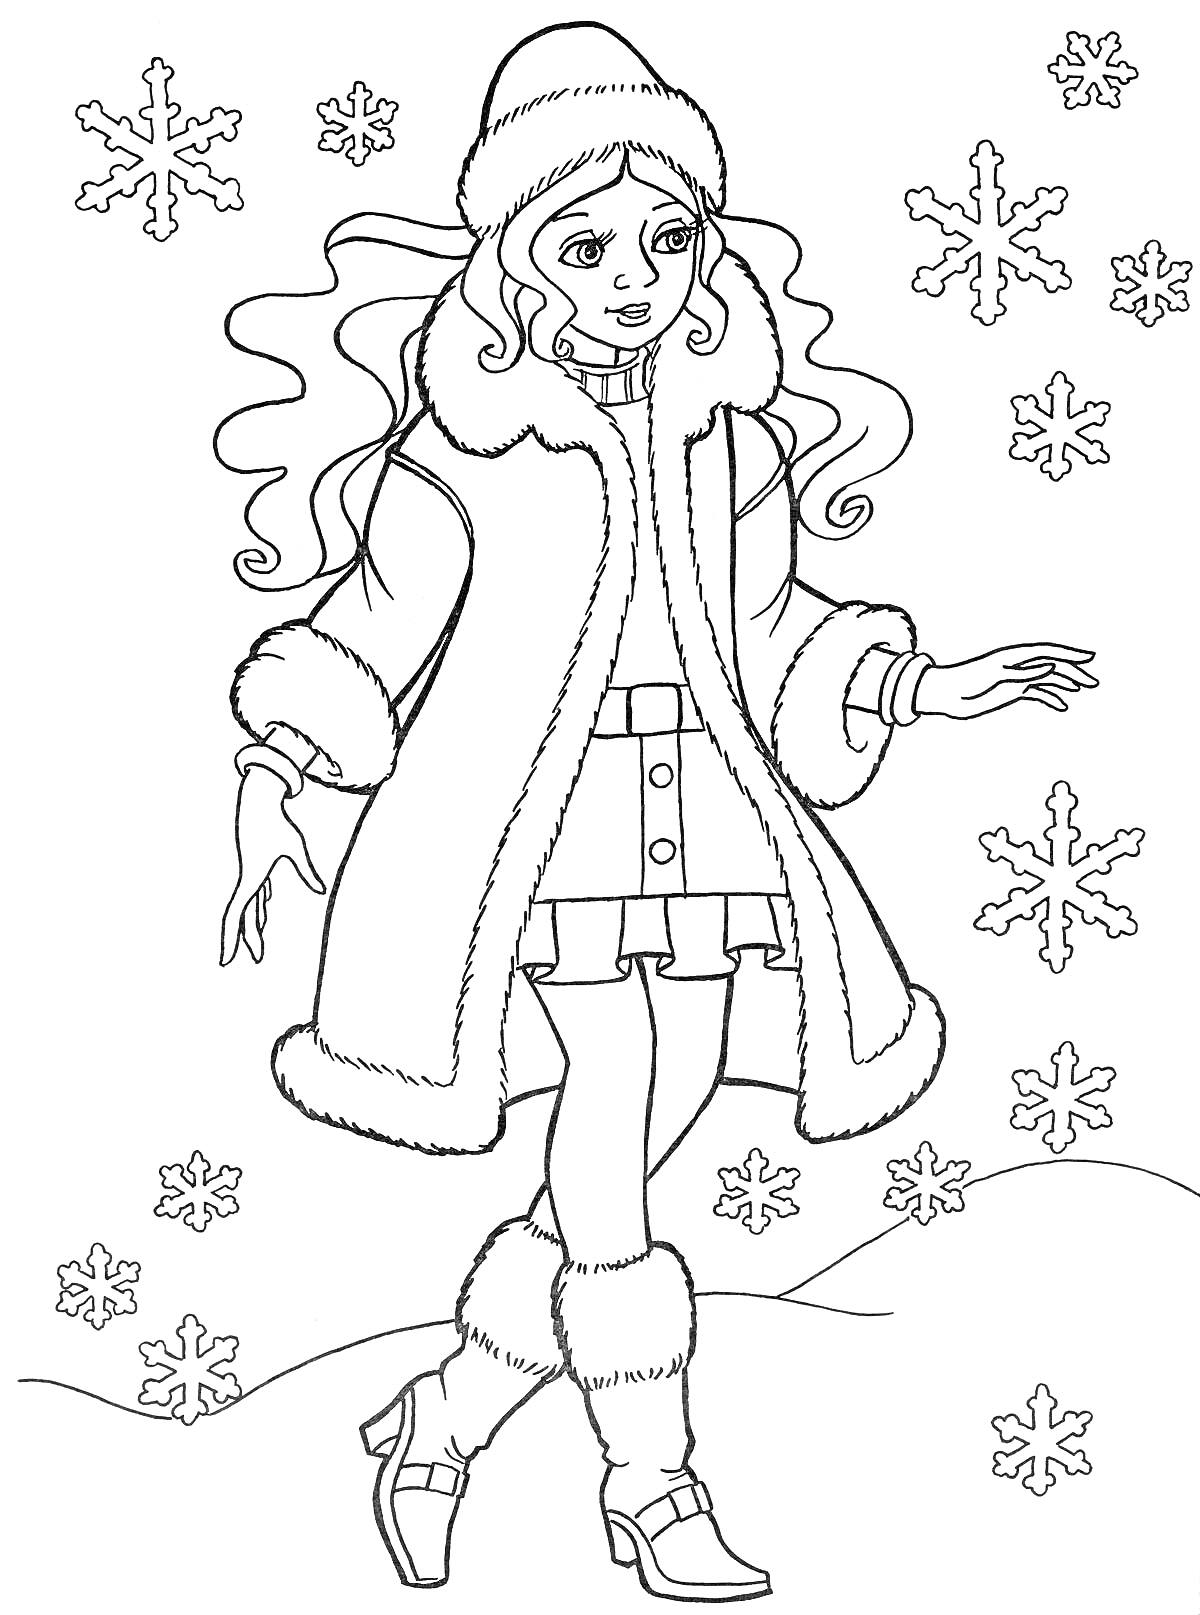 Раскраска Девочка в зимней одежде на фоне снежинок